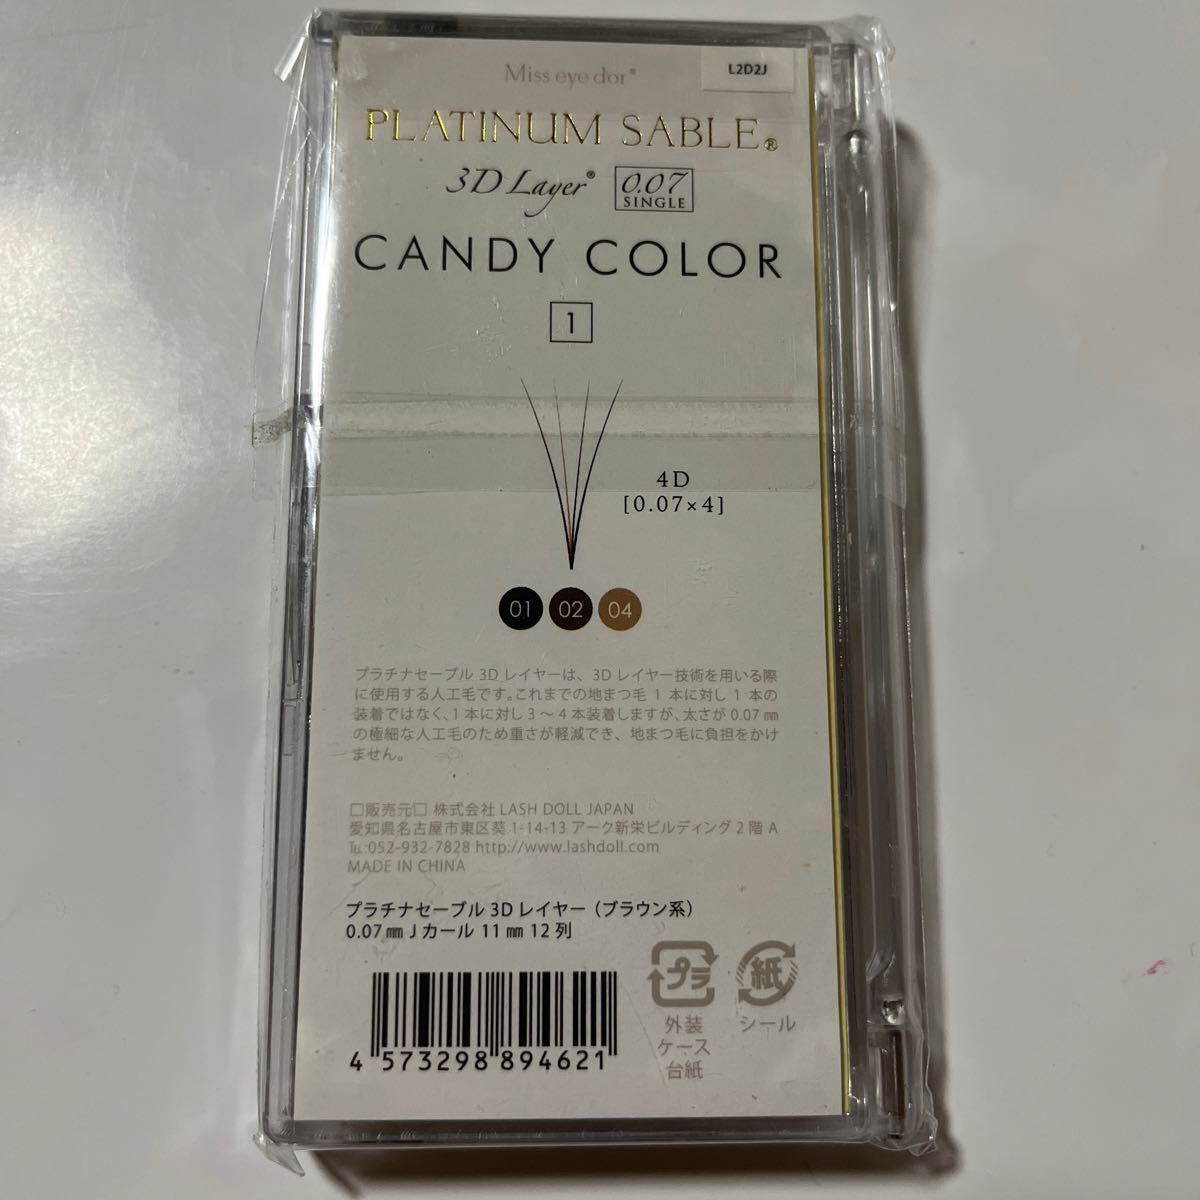  unused platinum sable candy color 0.07mmJ Karl 11mm Brown 